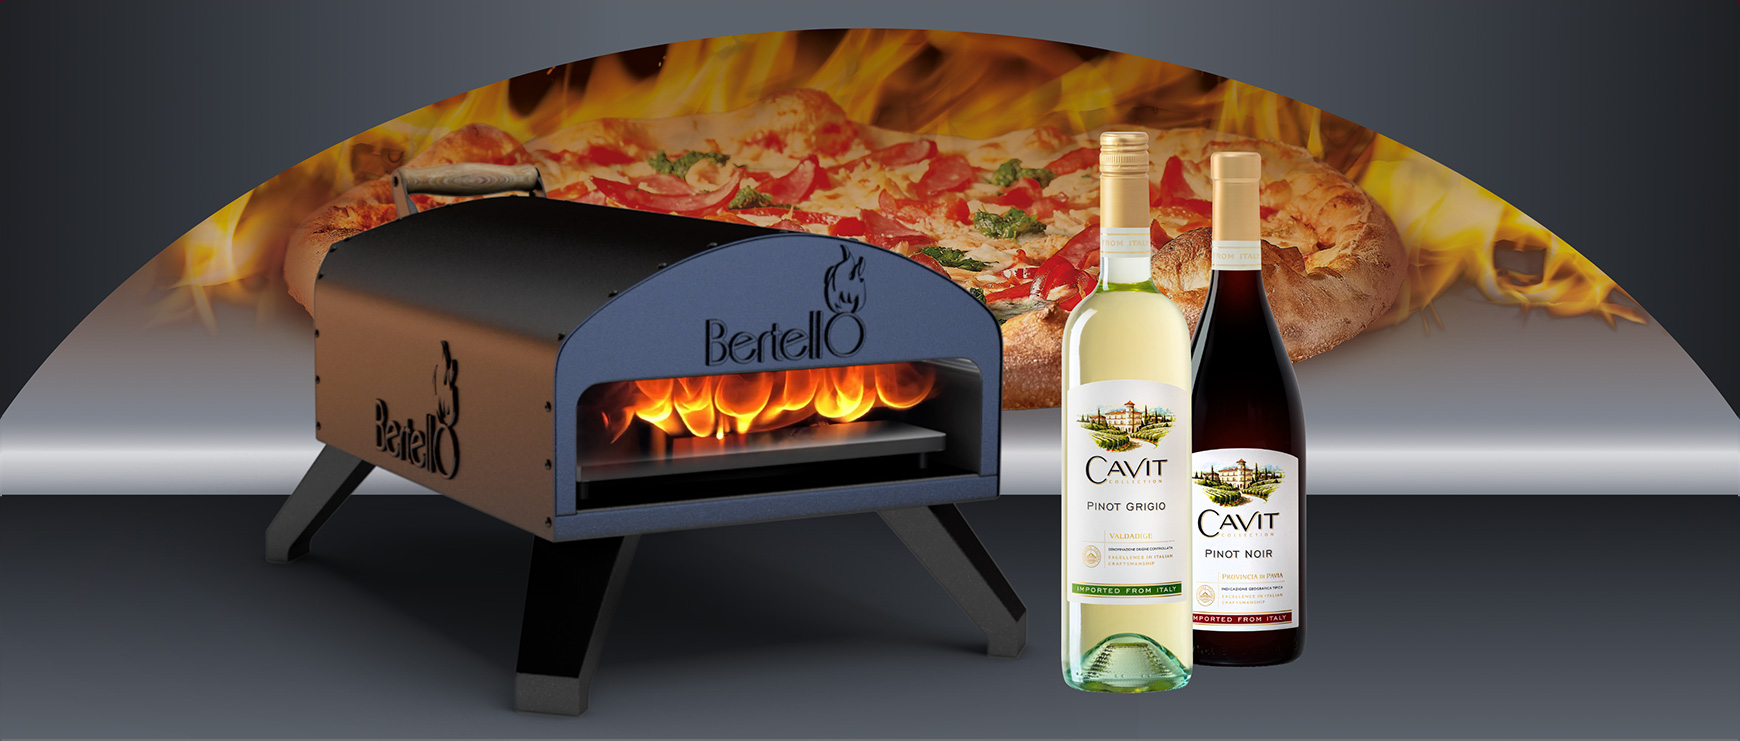 Cavit Wine Pizza Oven